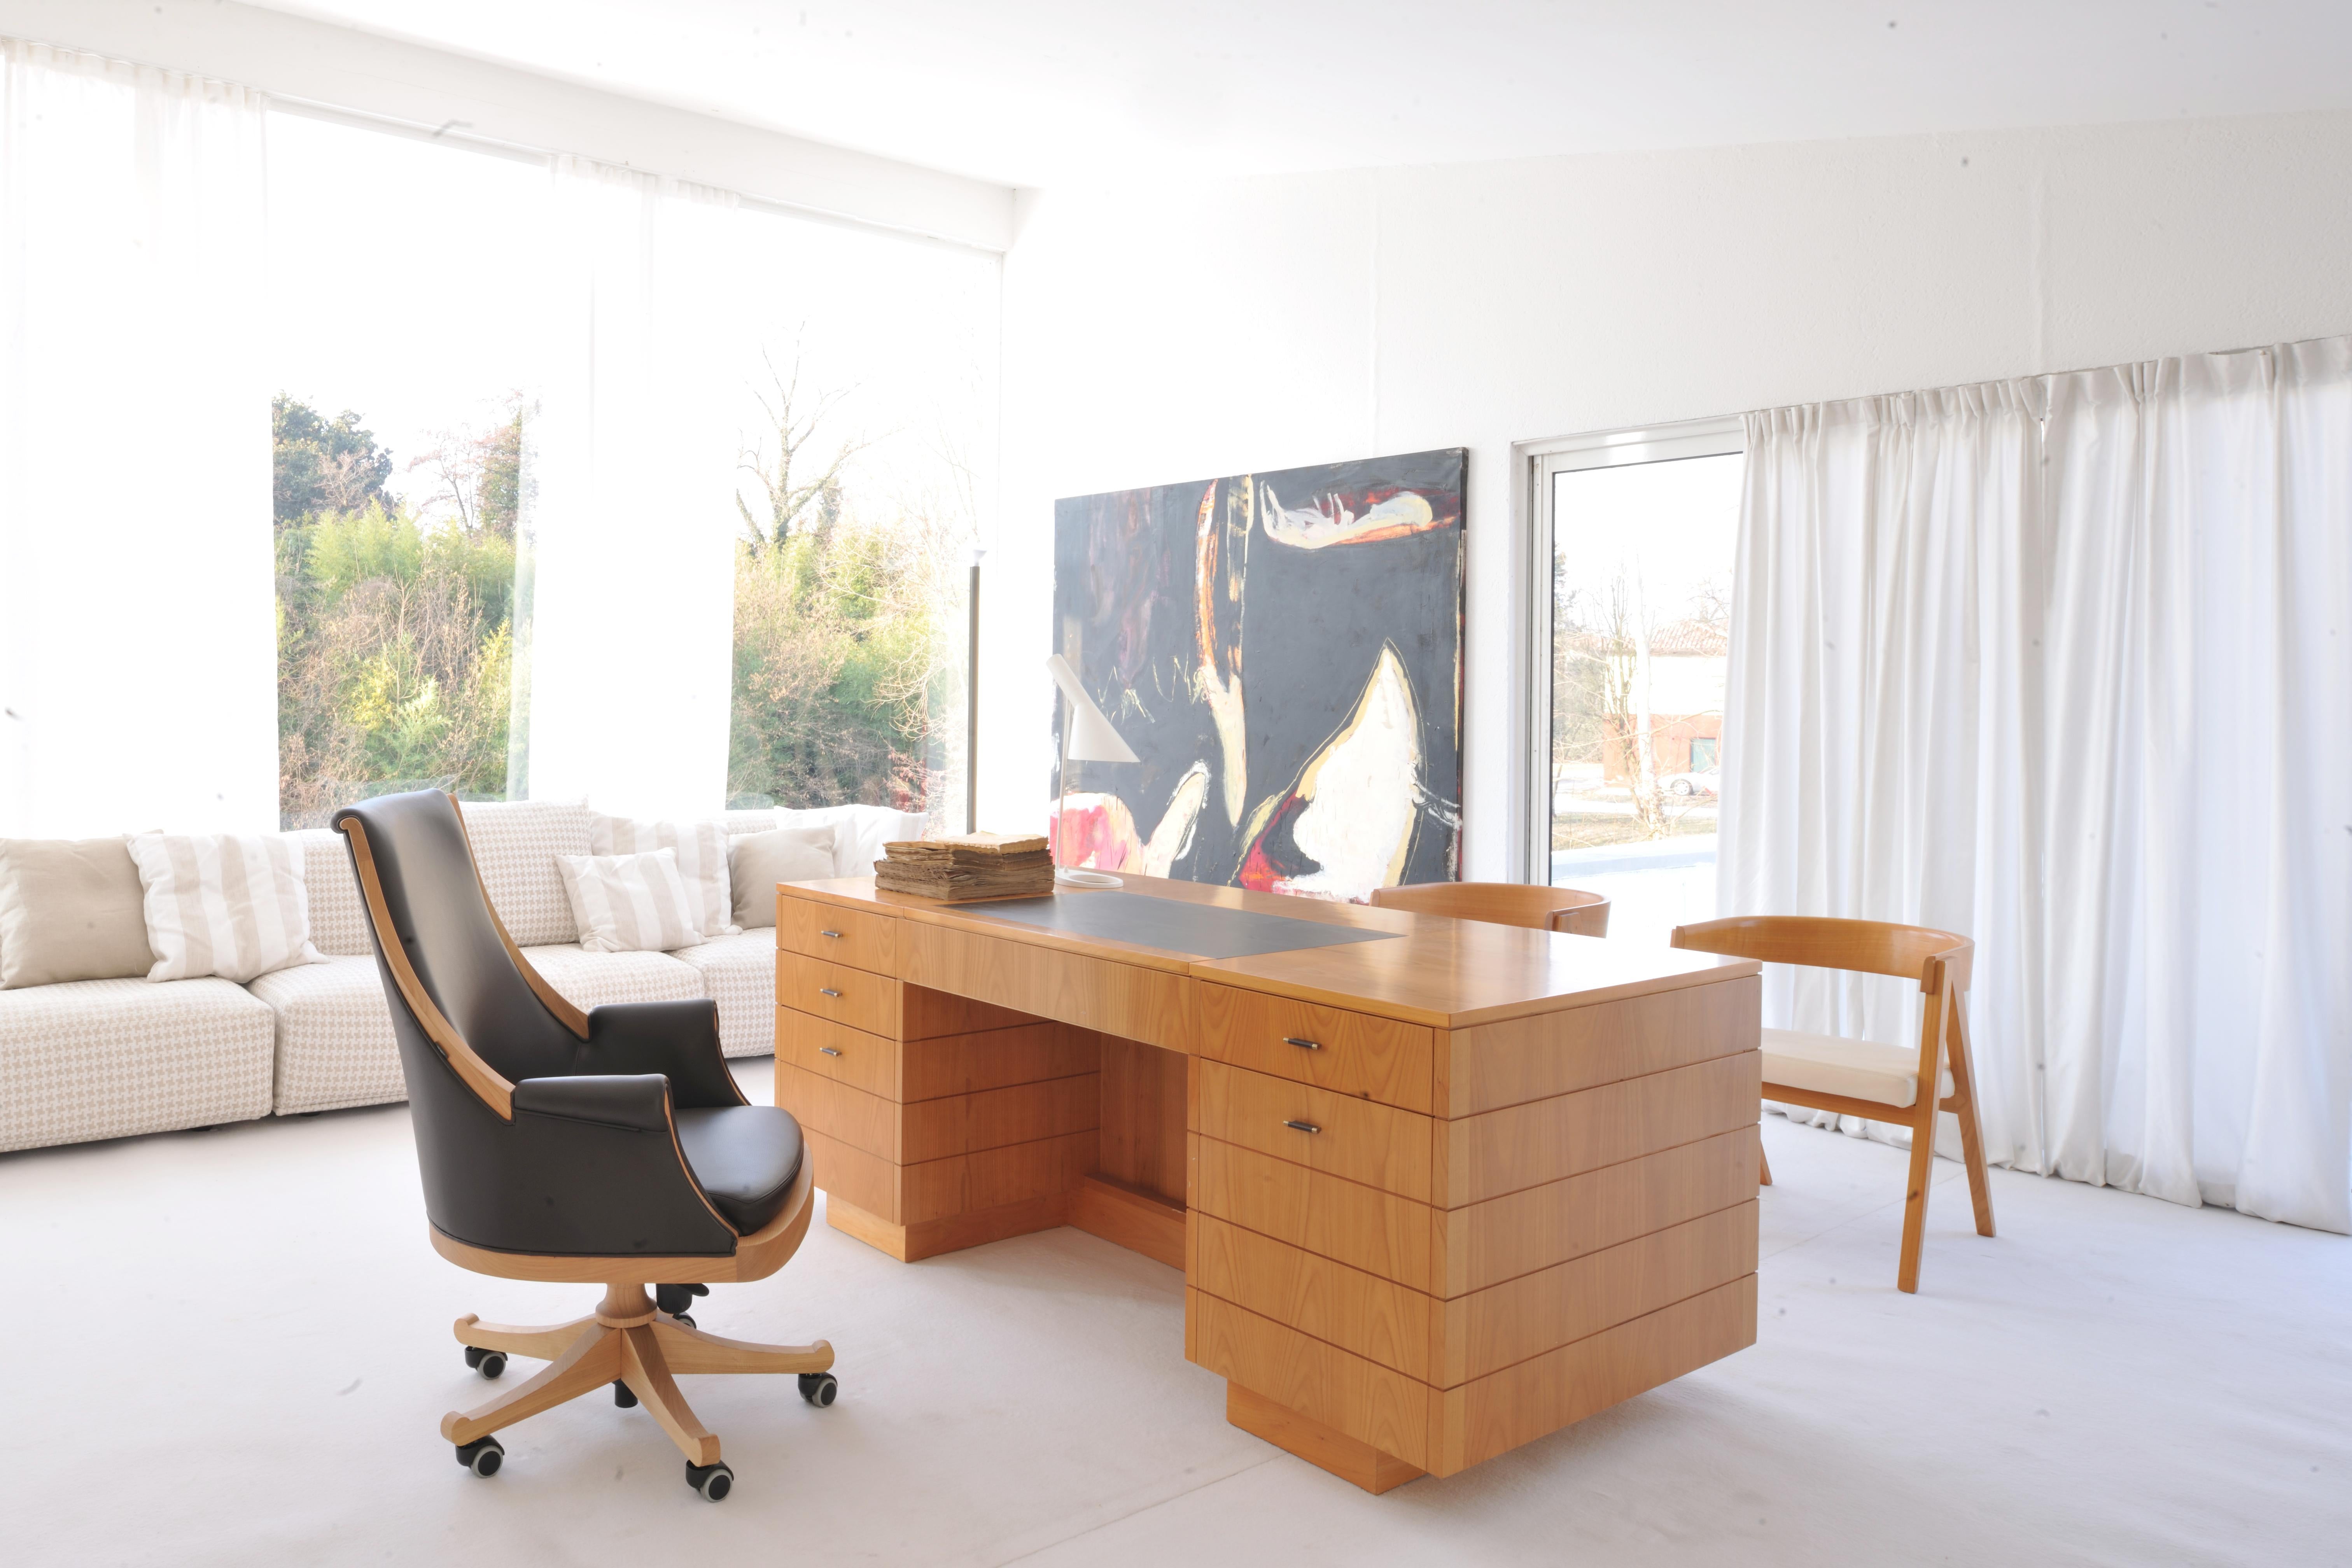 Roma Schreibtisch, ist ein professioneller Schreibtisch im '900er Stil aus Kirschholz mit Schubladen, versteckten Fächern, lederbezogener Klappplatte
Erhältlich in verschiedenen Holzfarben und Ledersorten.